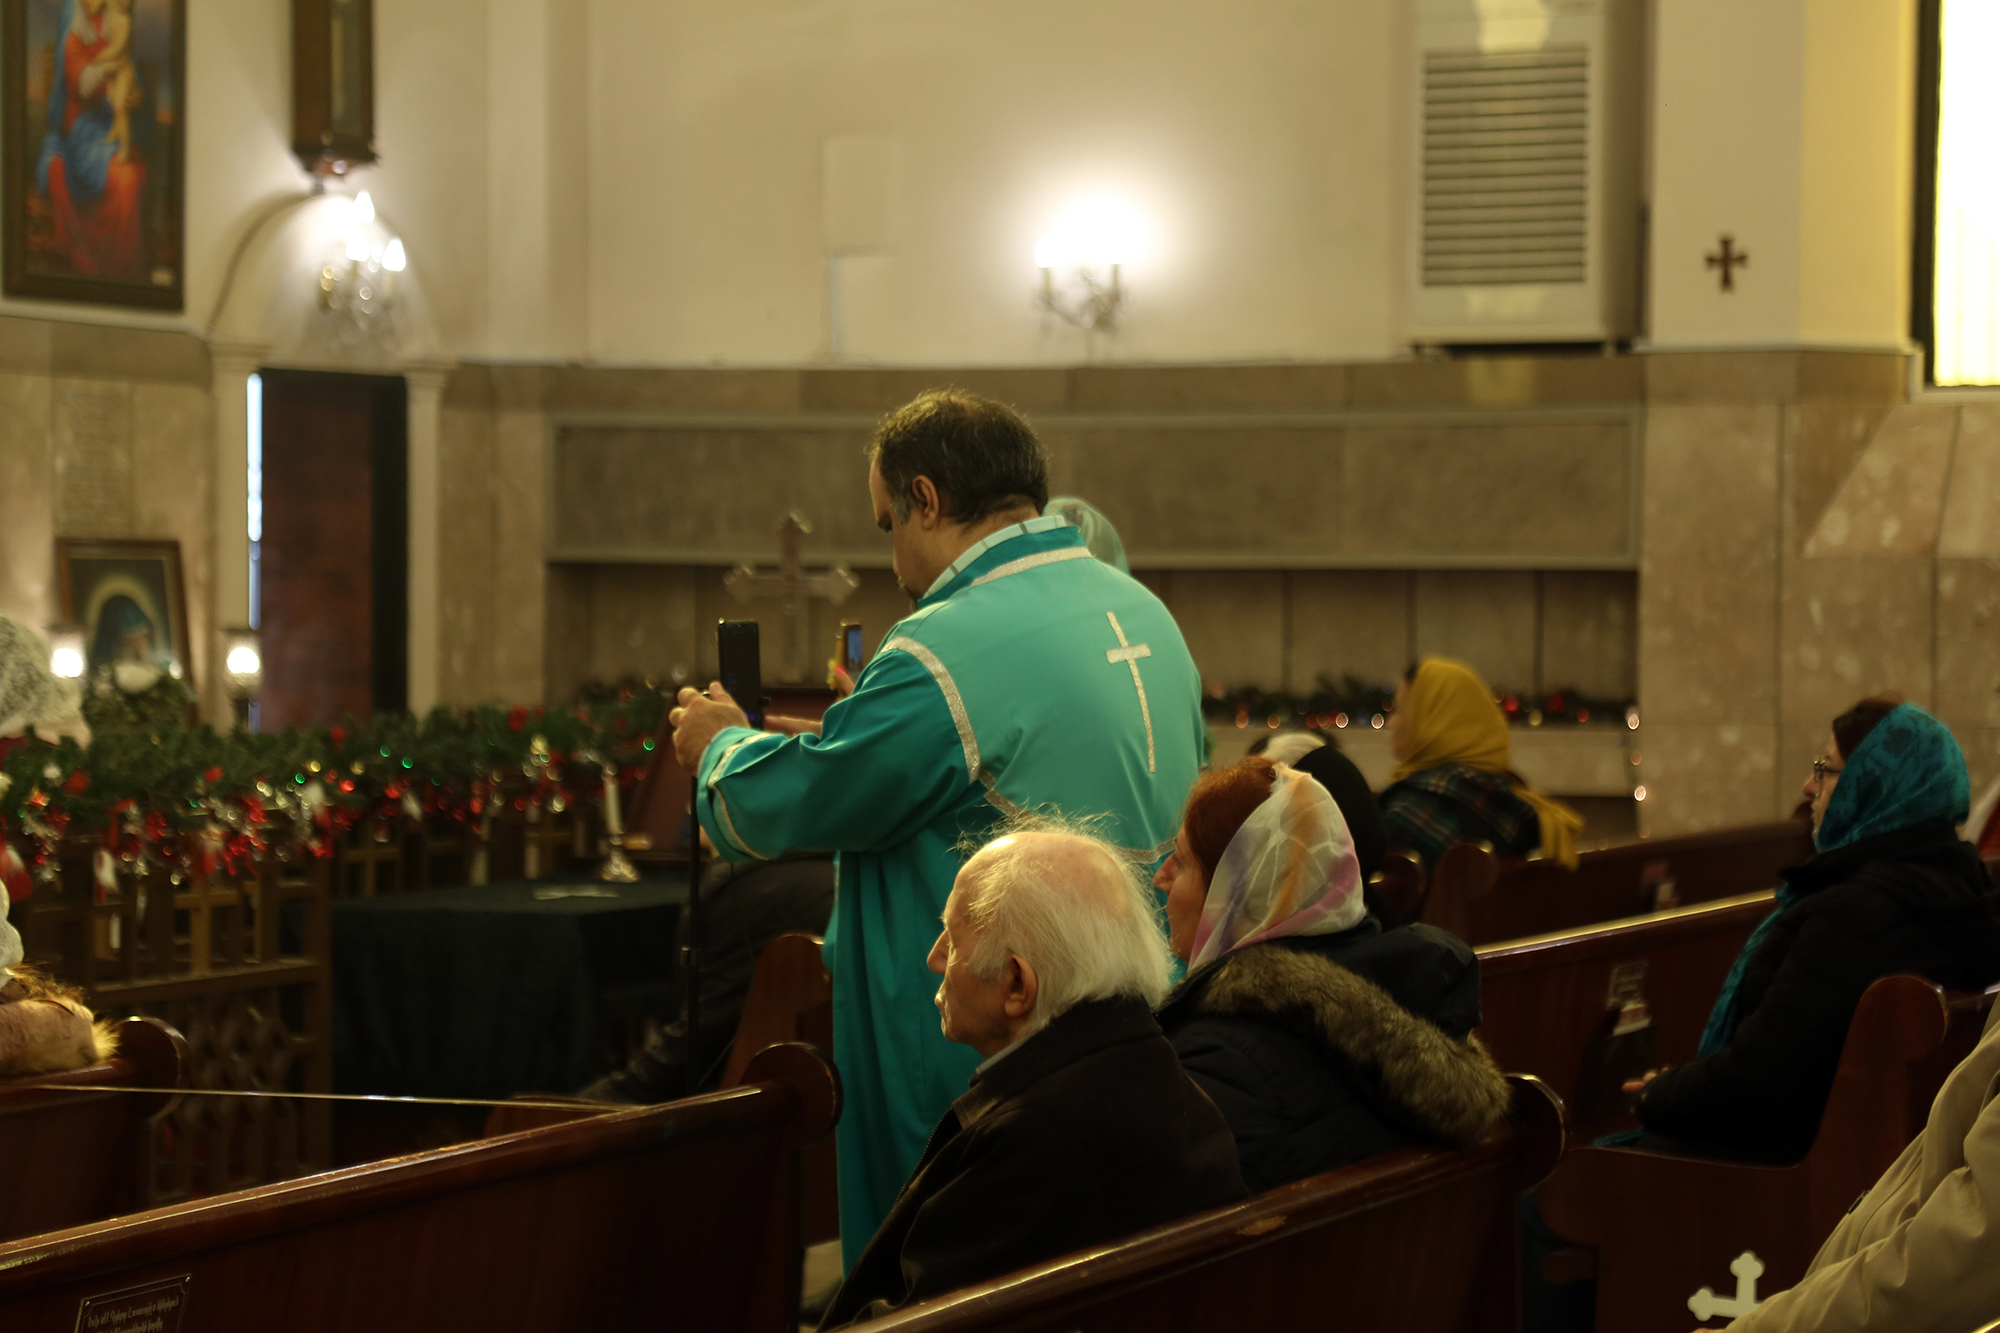 گزارش تصویری 2- از مراسم تولد، غسل تعمید عیسی مسیح (ع)  و حضور بابا نئول در کلیسا مقدس گریگور تهران - عکاس: فاطمه ( آزاده) حلوایی